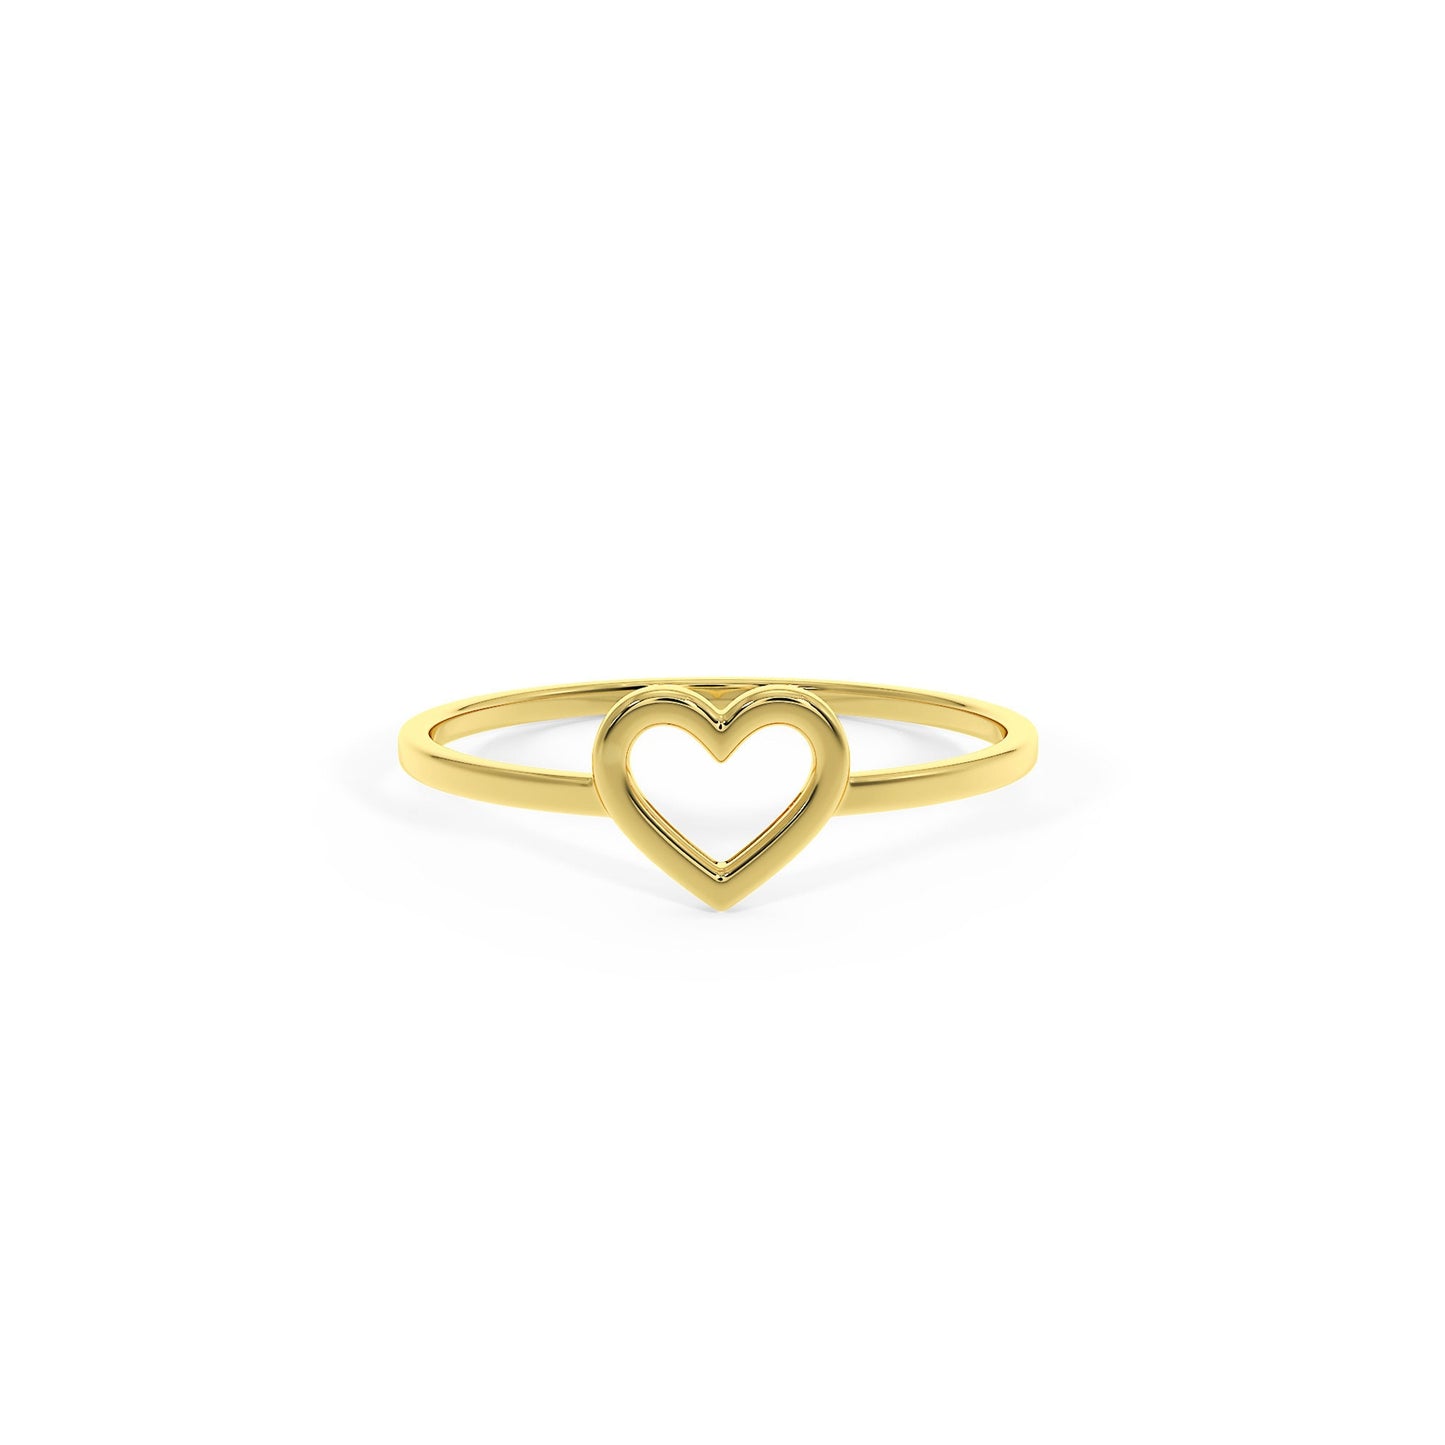 Rose Gold Heart Ring, Heart Shape Ring, 14k Gold Ring, Open Heart Ring, Love Ring, Stacking Ring, Birthday Gift for Her, Friendship ring